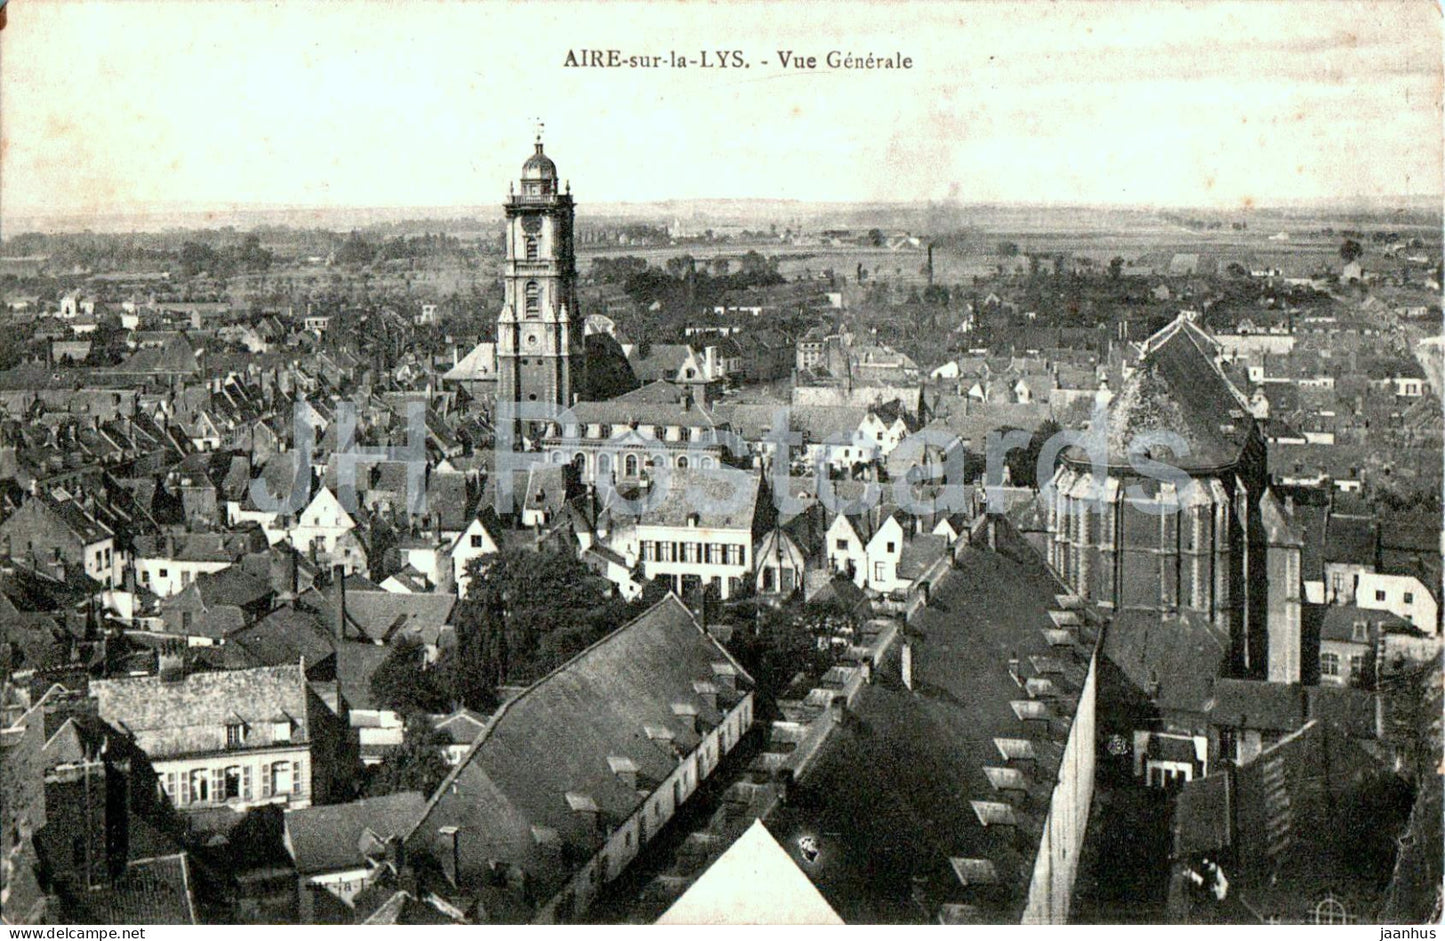 Aire sur la Lys - Vue Generale - general view - old postcard - 1914 - France - used - JH Postcards